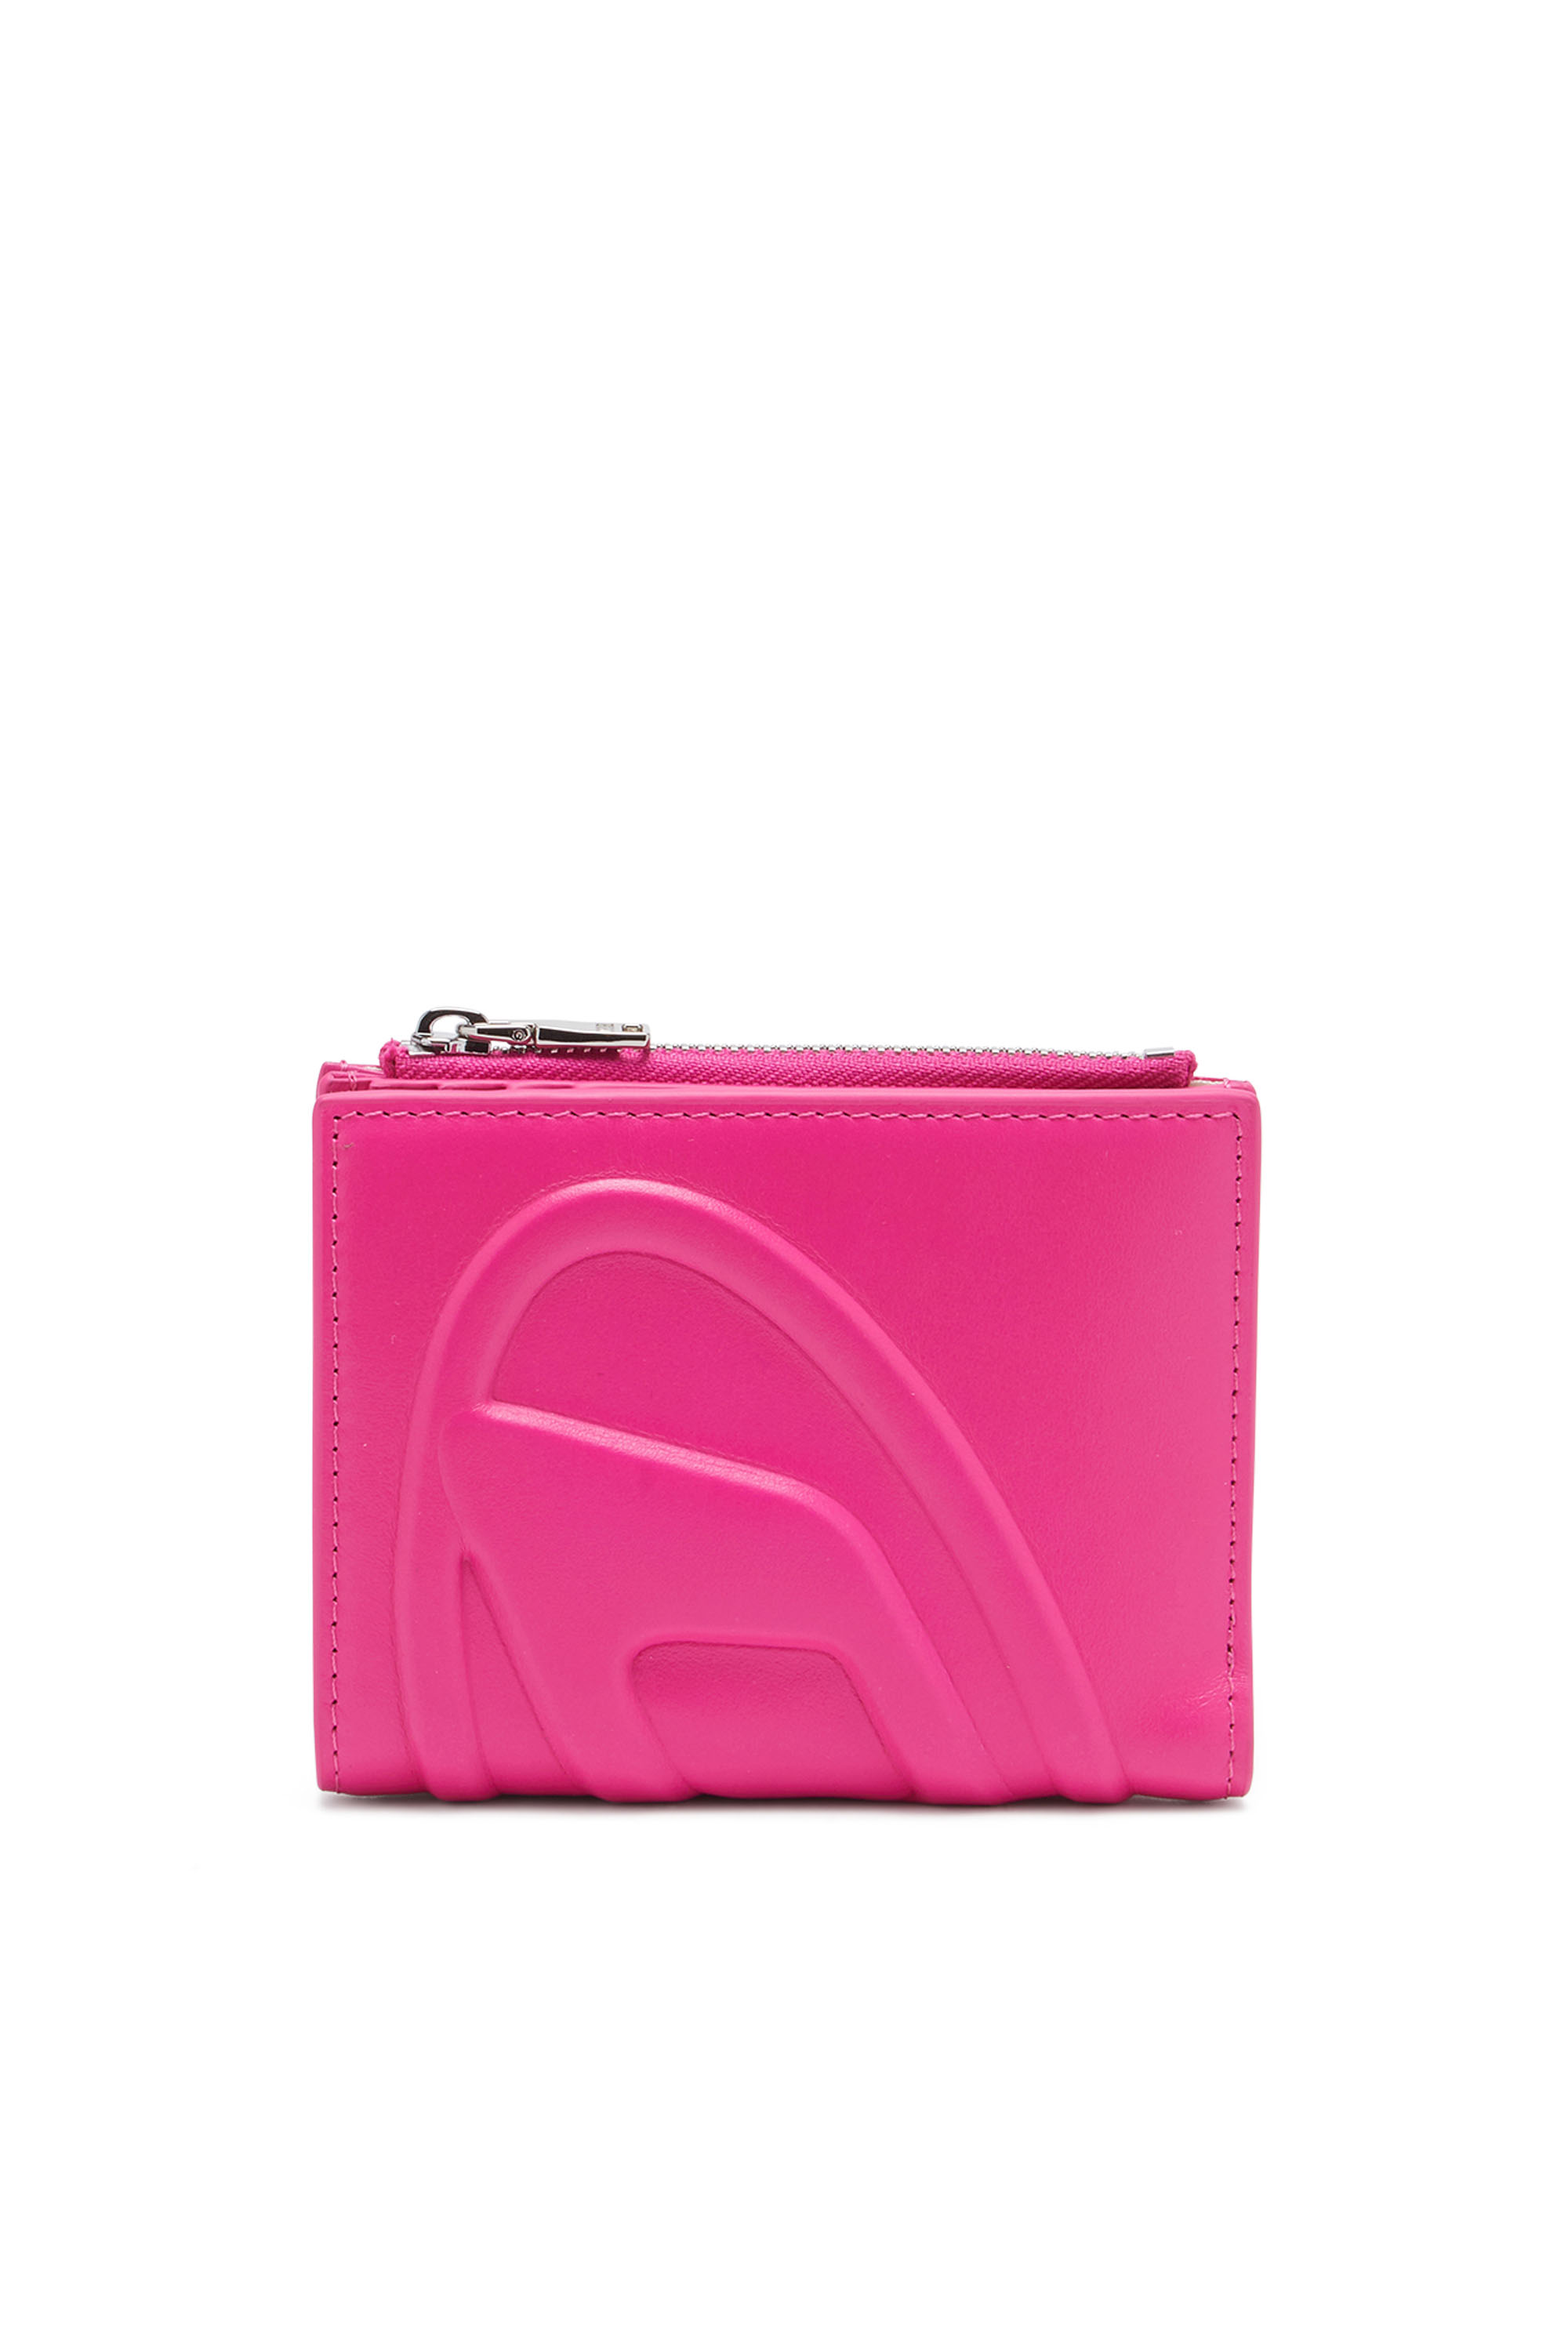 Diesel - Kleines Portemonnaie aus Leder mit Logo-Prägung - Kleine Portemonnaies - Damen - Rosa